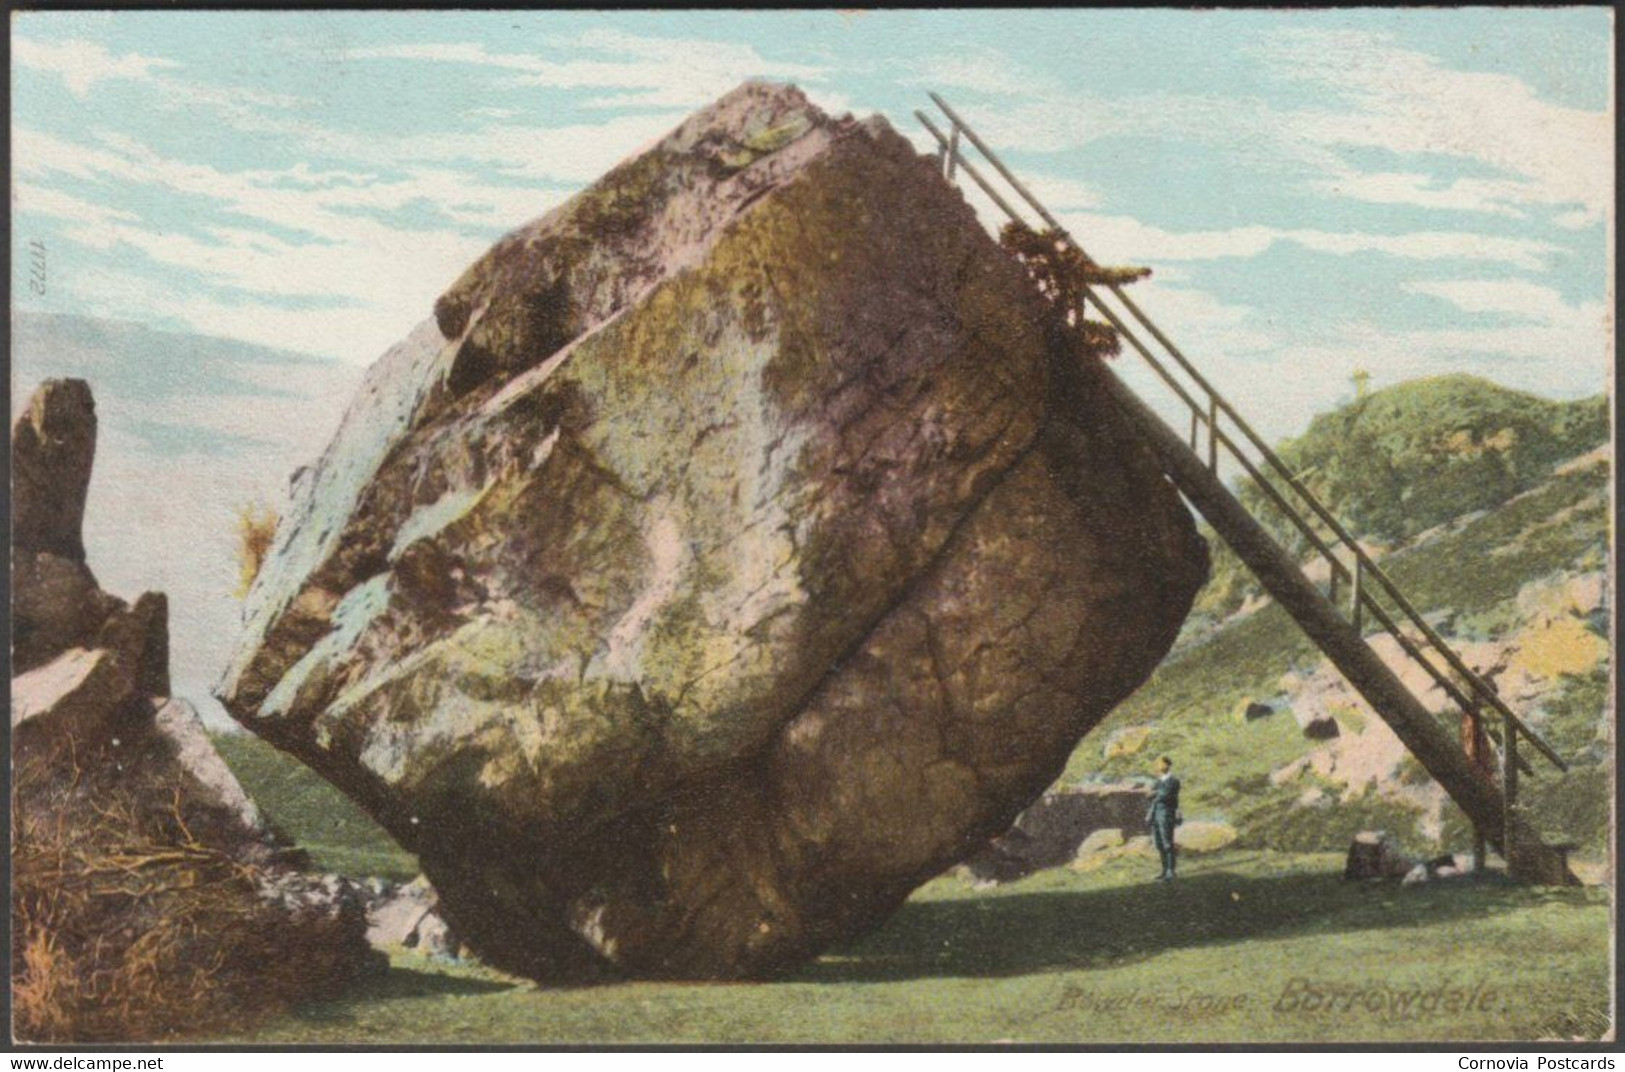 Bowder Stone, Borrowdale, Cumberland, C.1905-10 - Postcard - Borrowdale